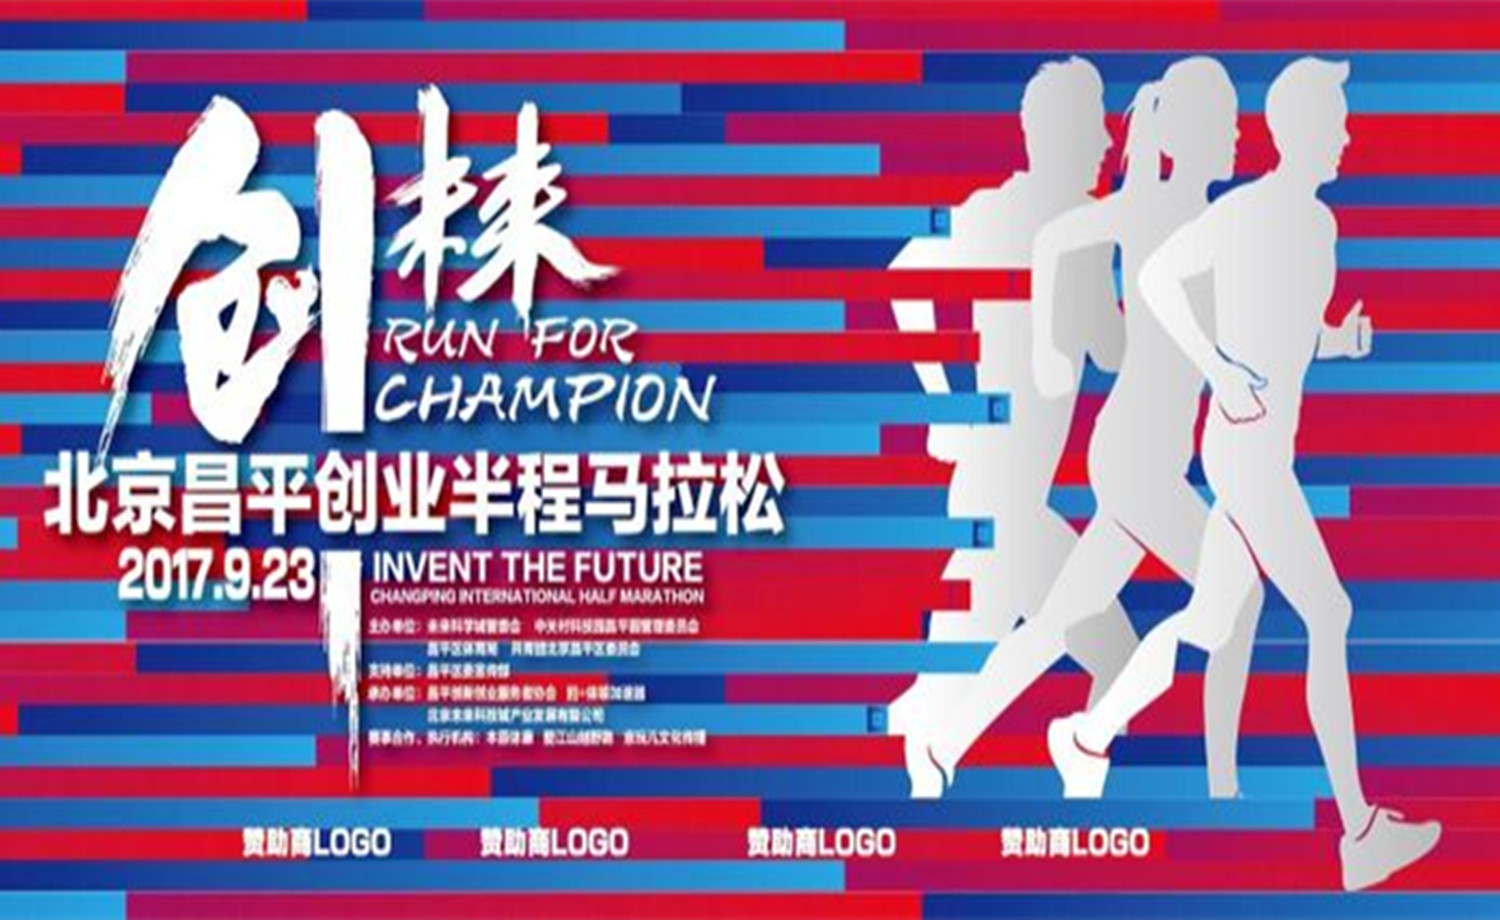 创未来·北京昌平创业半程马拉松